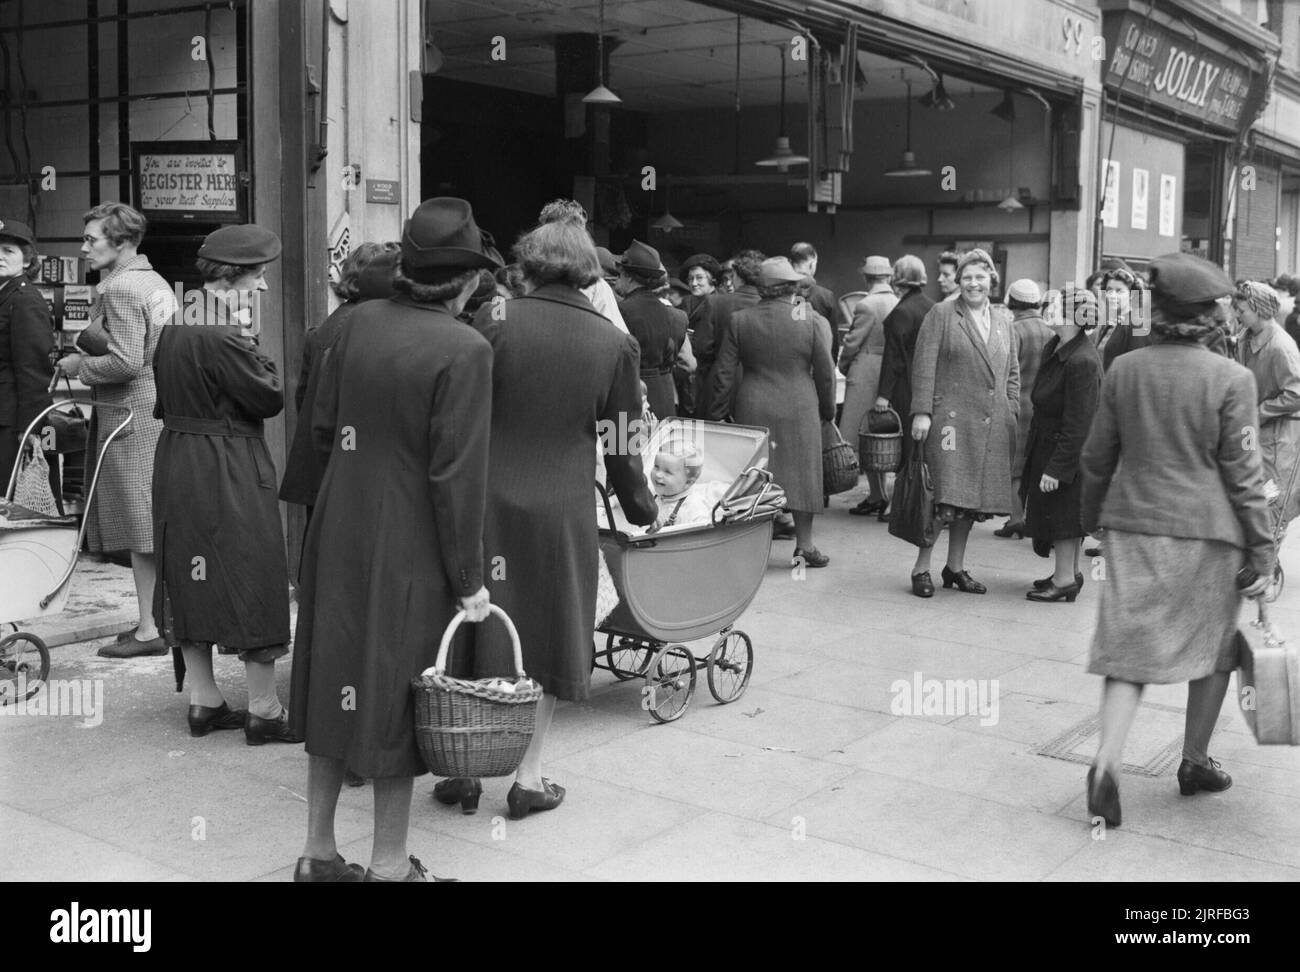 Käufer Warteschlange für Gemüse außerhalb der Gemüsehändler Shop, 'J Holz", 97-99 High Road, Wood Green, London 1945. Massen von Frauen, die das Pflaster, wie sie für Gemüse außerhalb der Gemüsehändler shop Queue, 'J Holz", 97-99 High Road, Holz Grün. Viele haben Babys im Kinderwagen. Gerade sichtbar rechts auf dem Foto ist der Shop 'Jolly', die verkauft" zubereitet Bestimmungen fertig auf dem Tisch, wie zum Beispiel Torten, Gebäck und Sandwiches. Stockfoto